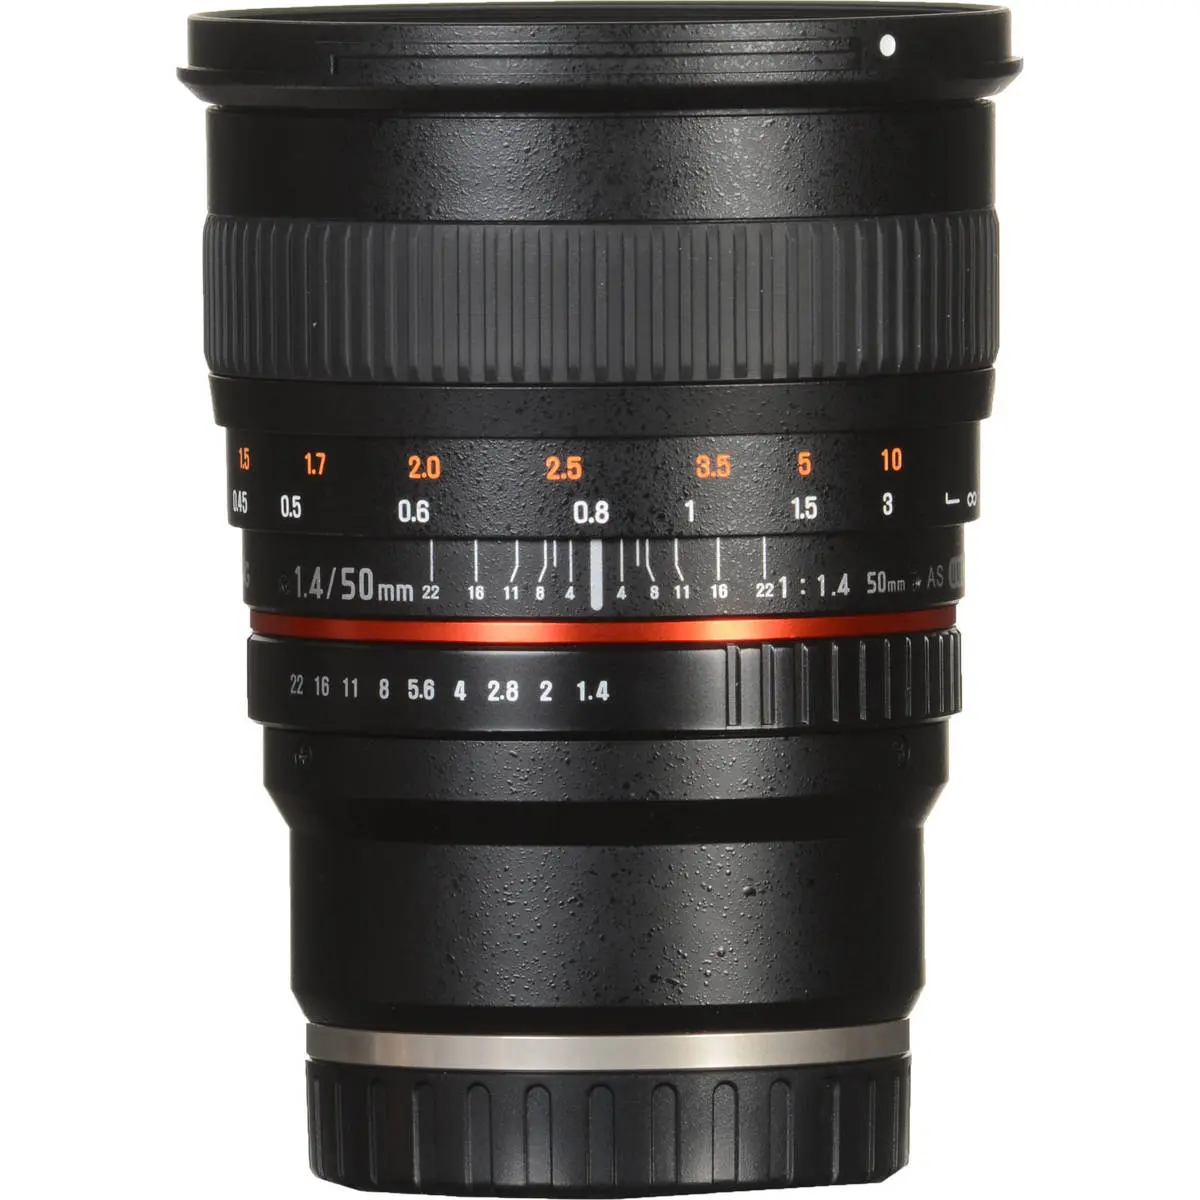 4. Samyang 50 mm f/1.4 AS UMC (Sony E) Lens